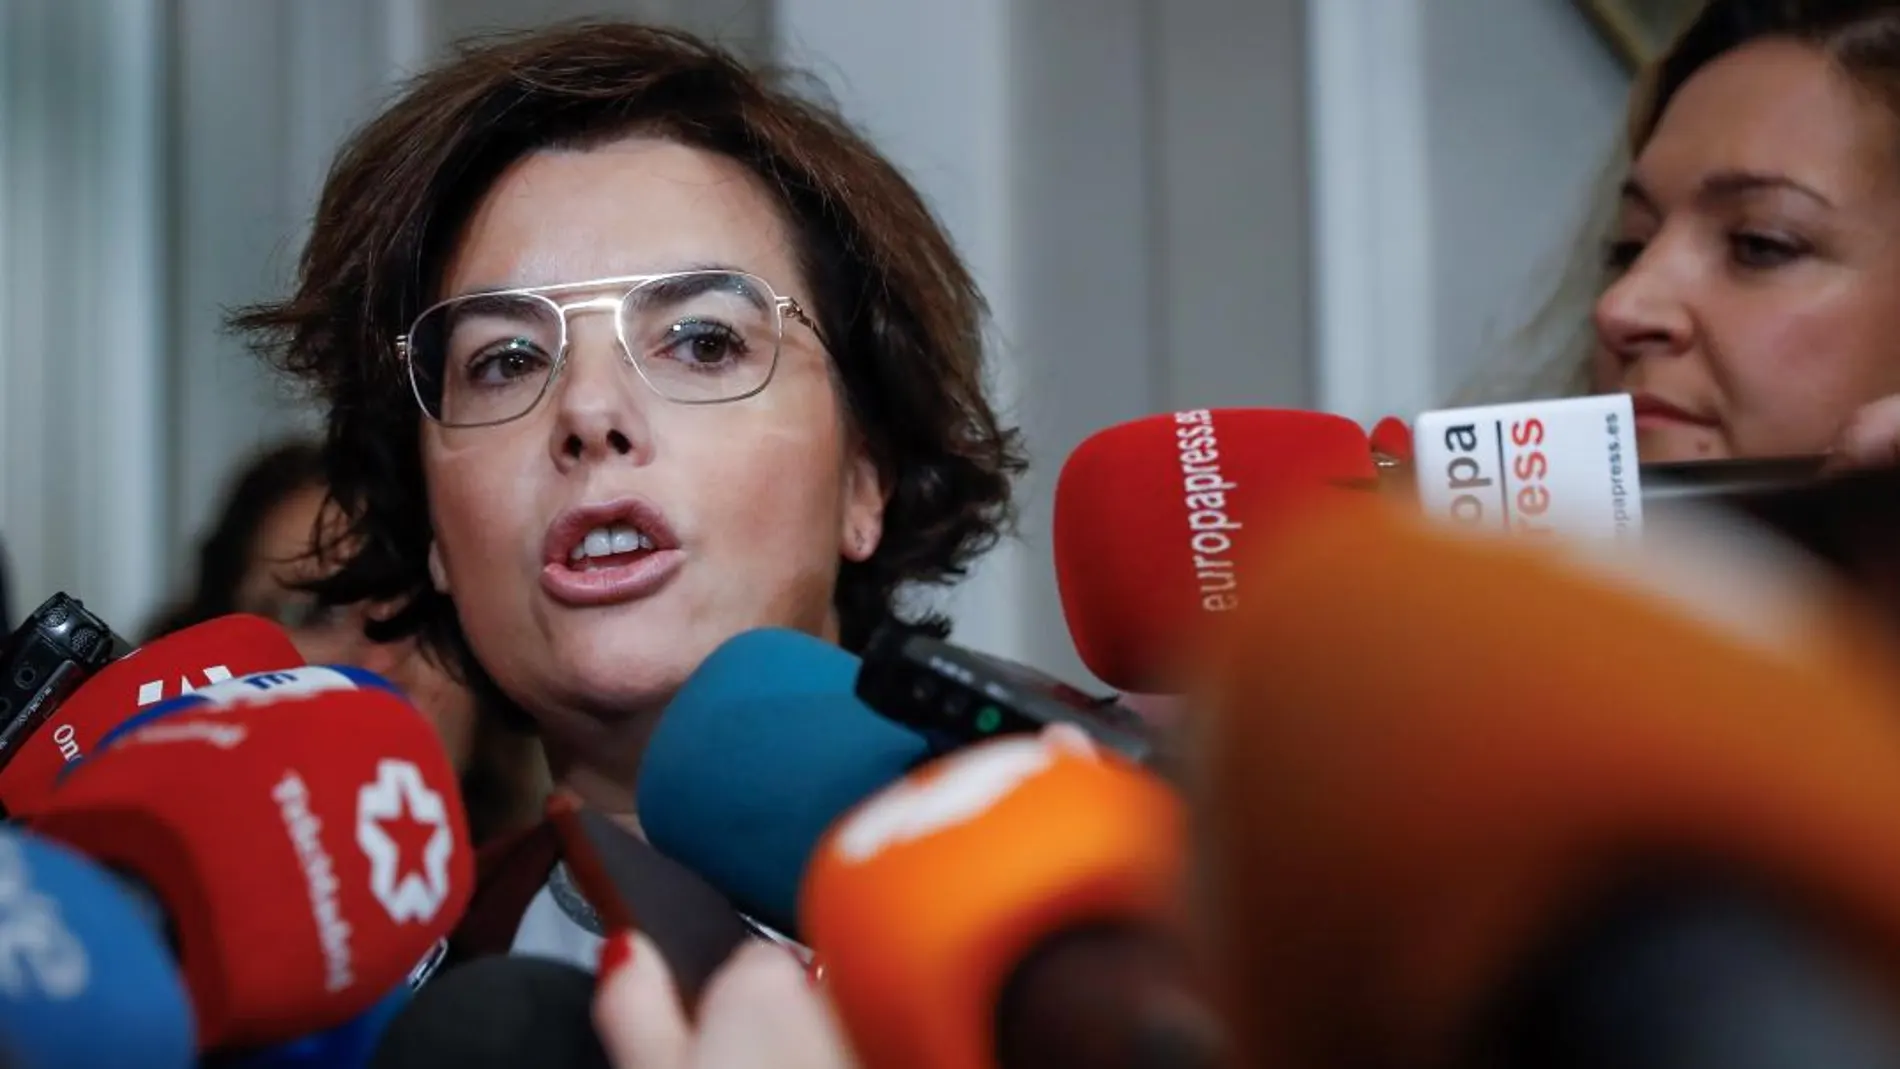 La vicepresidenta del Gobierno, Soraya Sáenz de Santamaría, se ha felicitado hoy de la "buena noticia"para los españoles "de bien"que supone que el Constitucional haya prohibido una investidura telemática